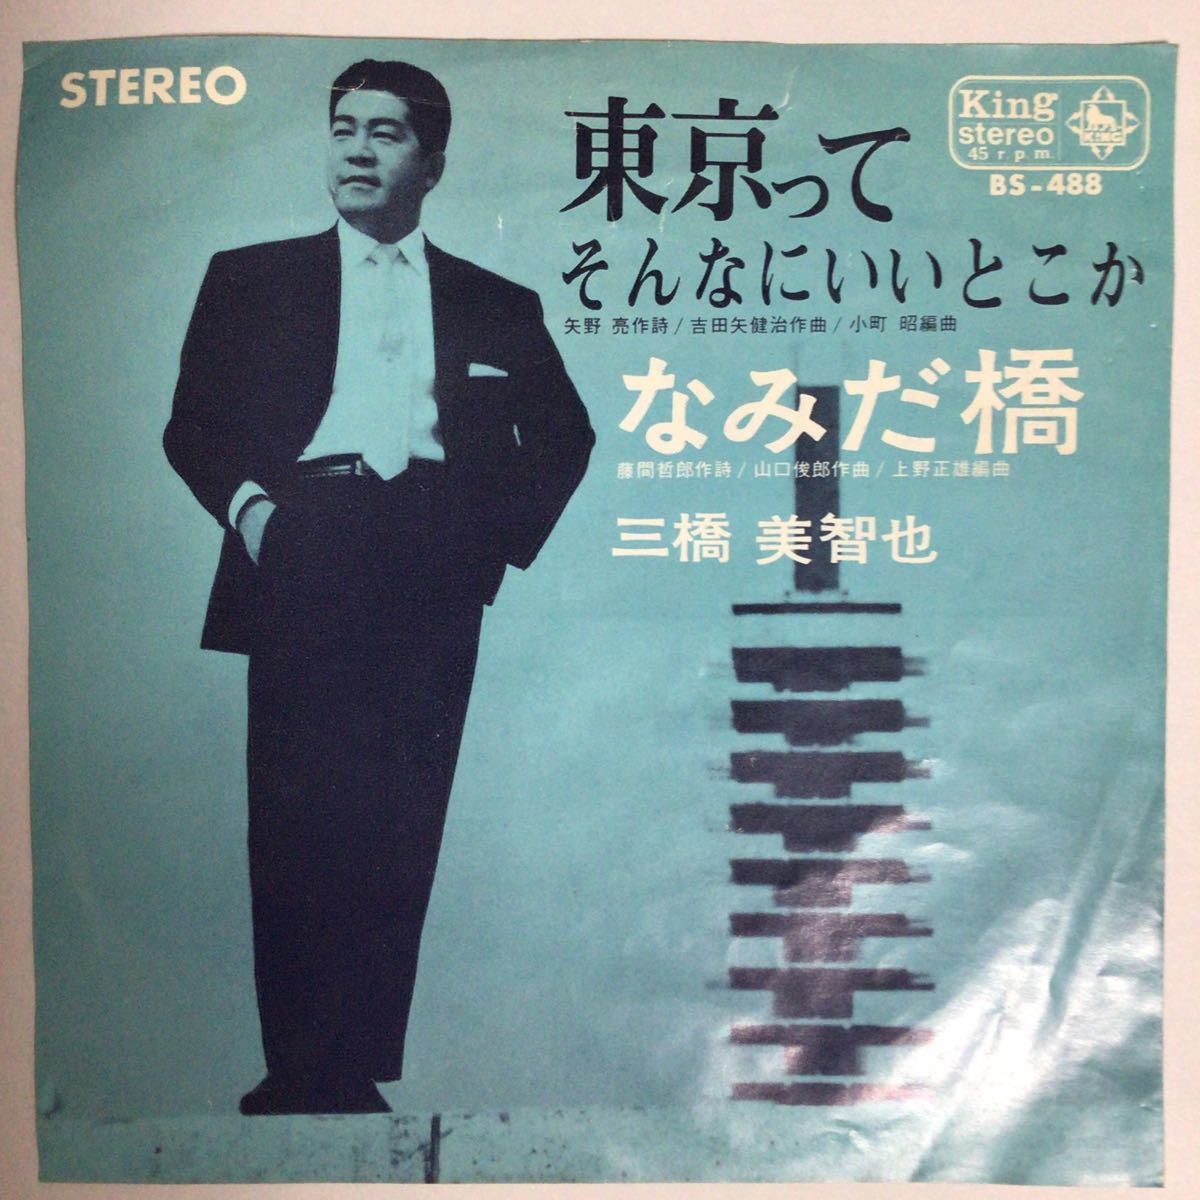 三橋美智也 東京ってそんなにいいとこか/なみだ橋 レア音源 昭和40年代 キングレコード EP